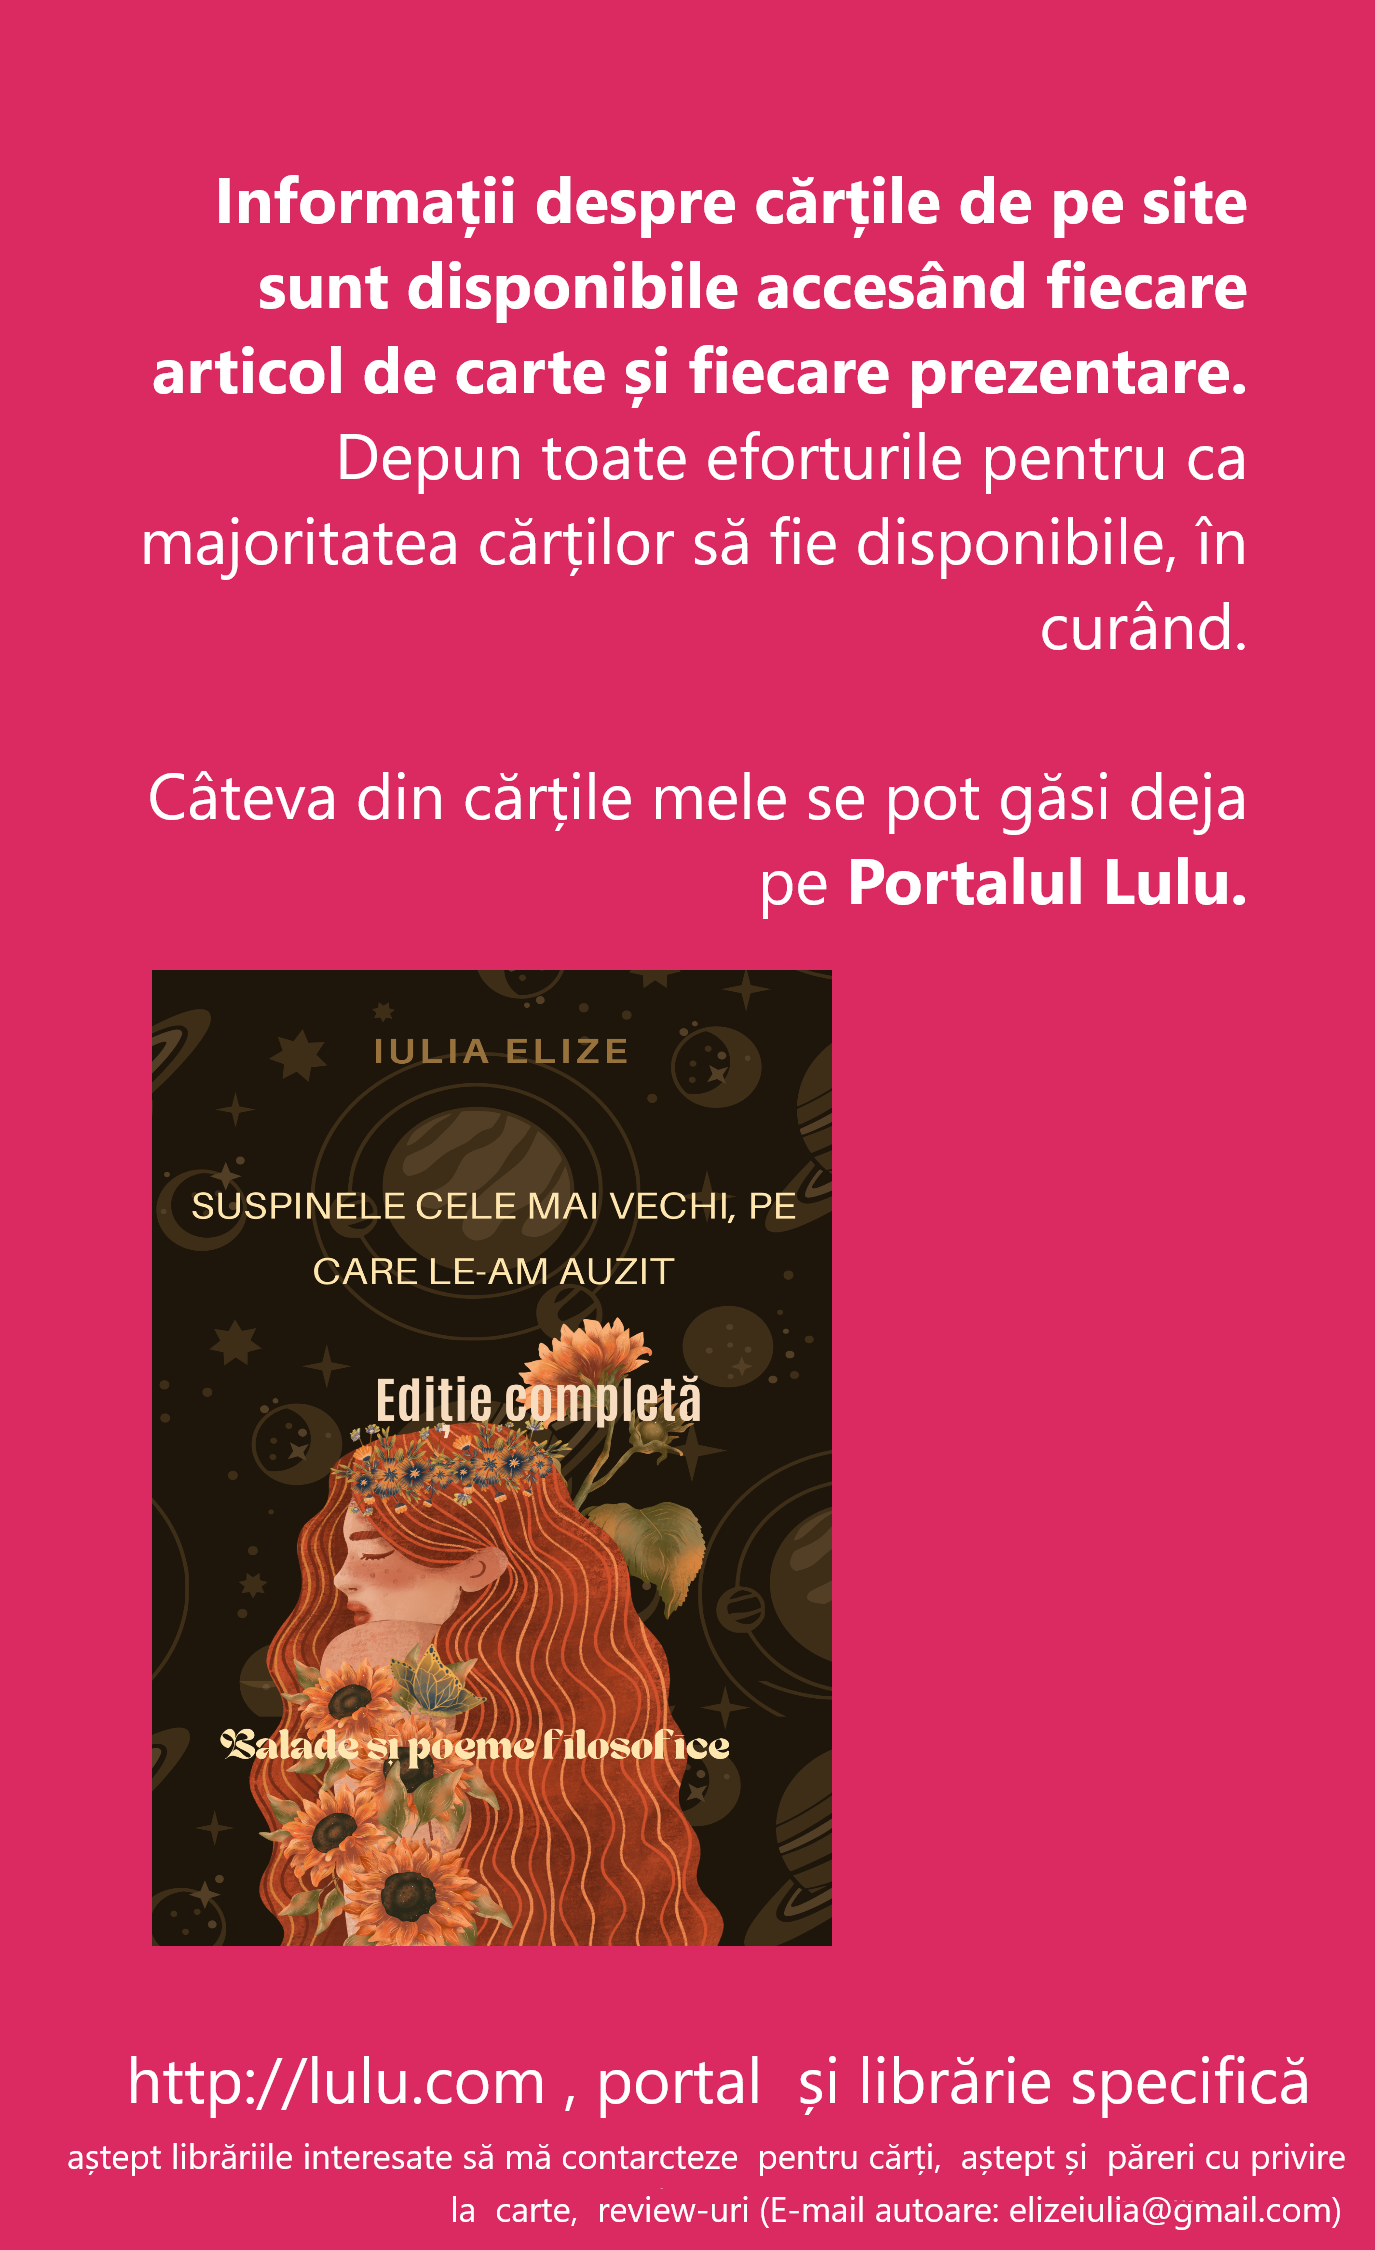 Informații de carte… Cărțile mele, în print, se găsesc pe ”Lulu.com” (Portal de carte…) Volumele, cărțile sunt puse la vânzare, pe site-ul Internațional (”Lulu.com”, portal special de carte)…